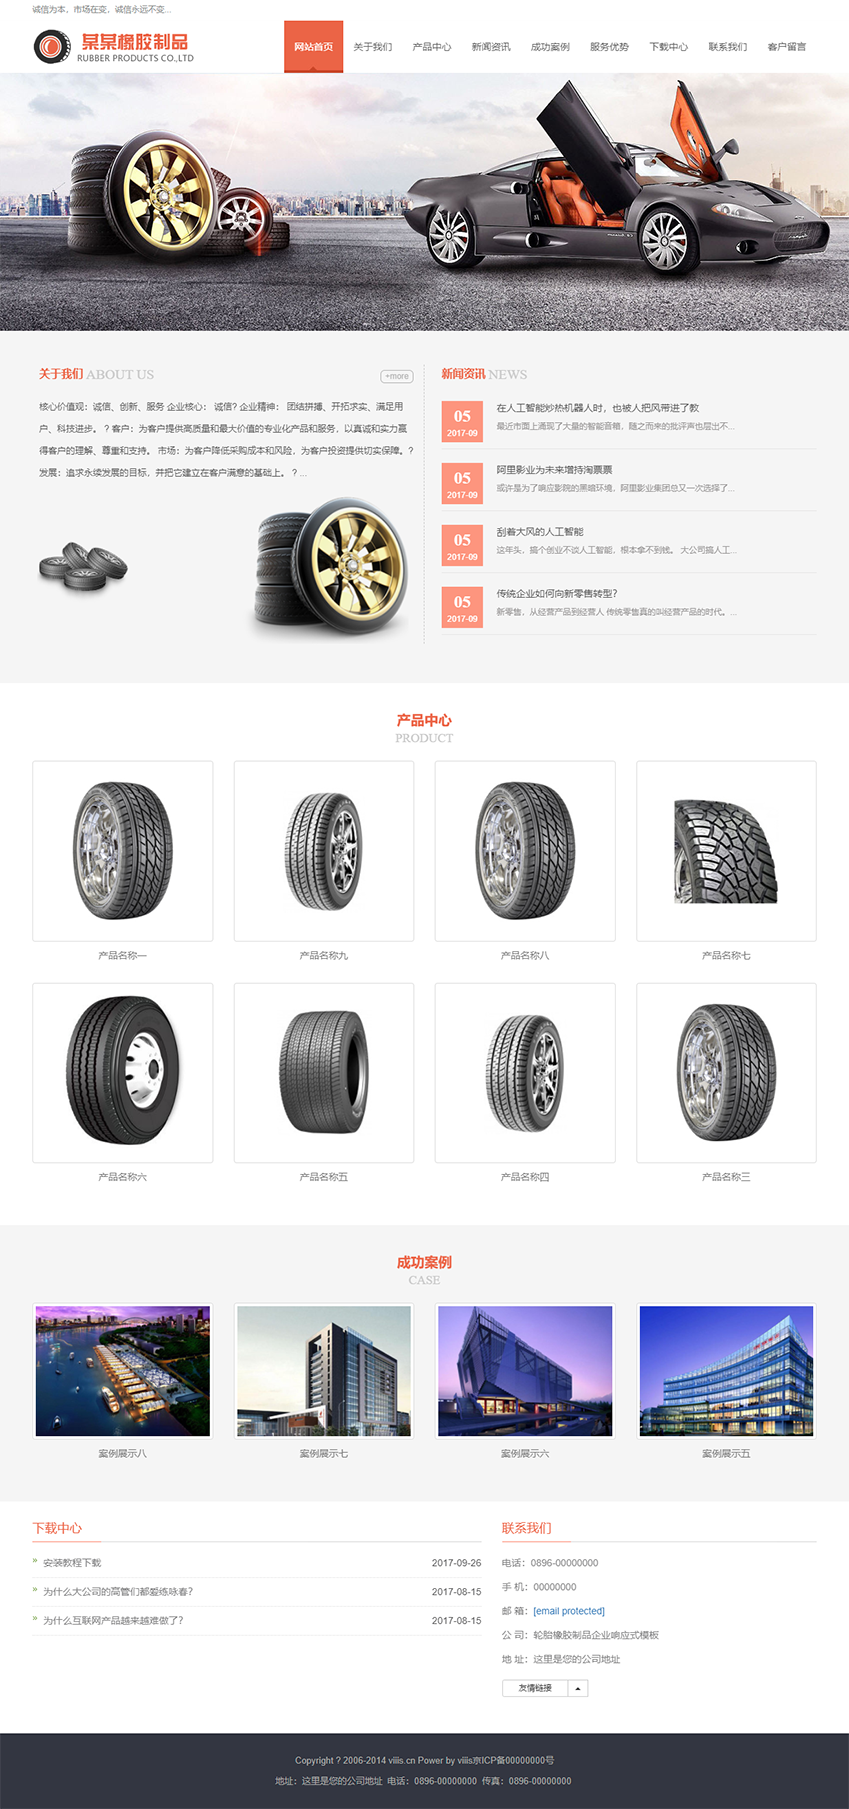 免费自式应手机+PC轮胎橡胶制品企业网站响应式html模板